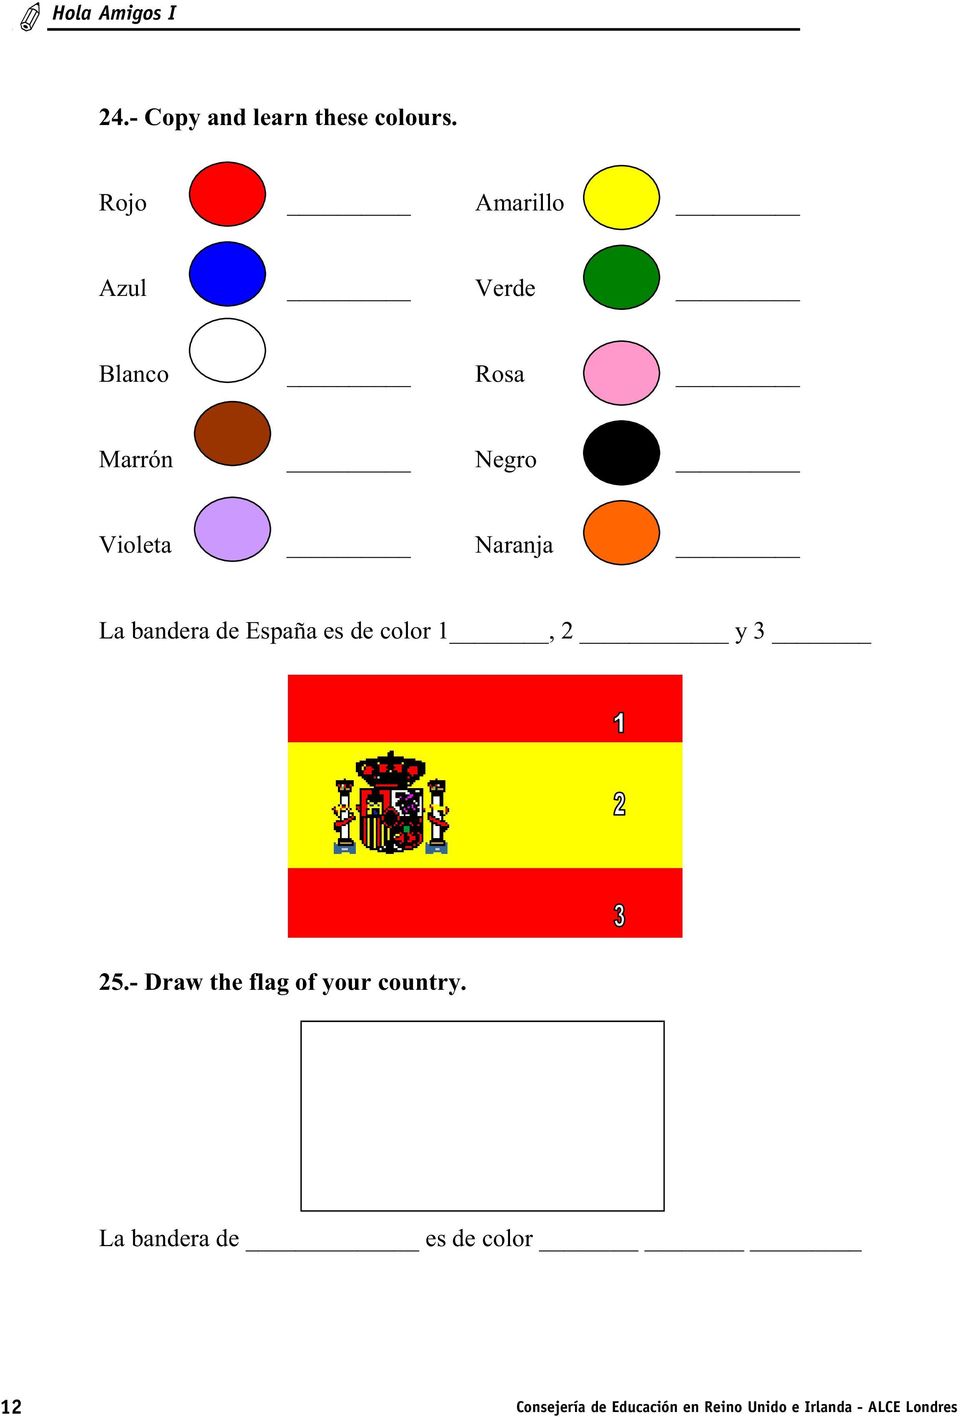 La bandera de España es de color 1, 2 y 3 25.